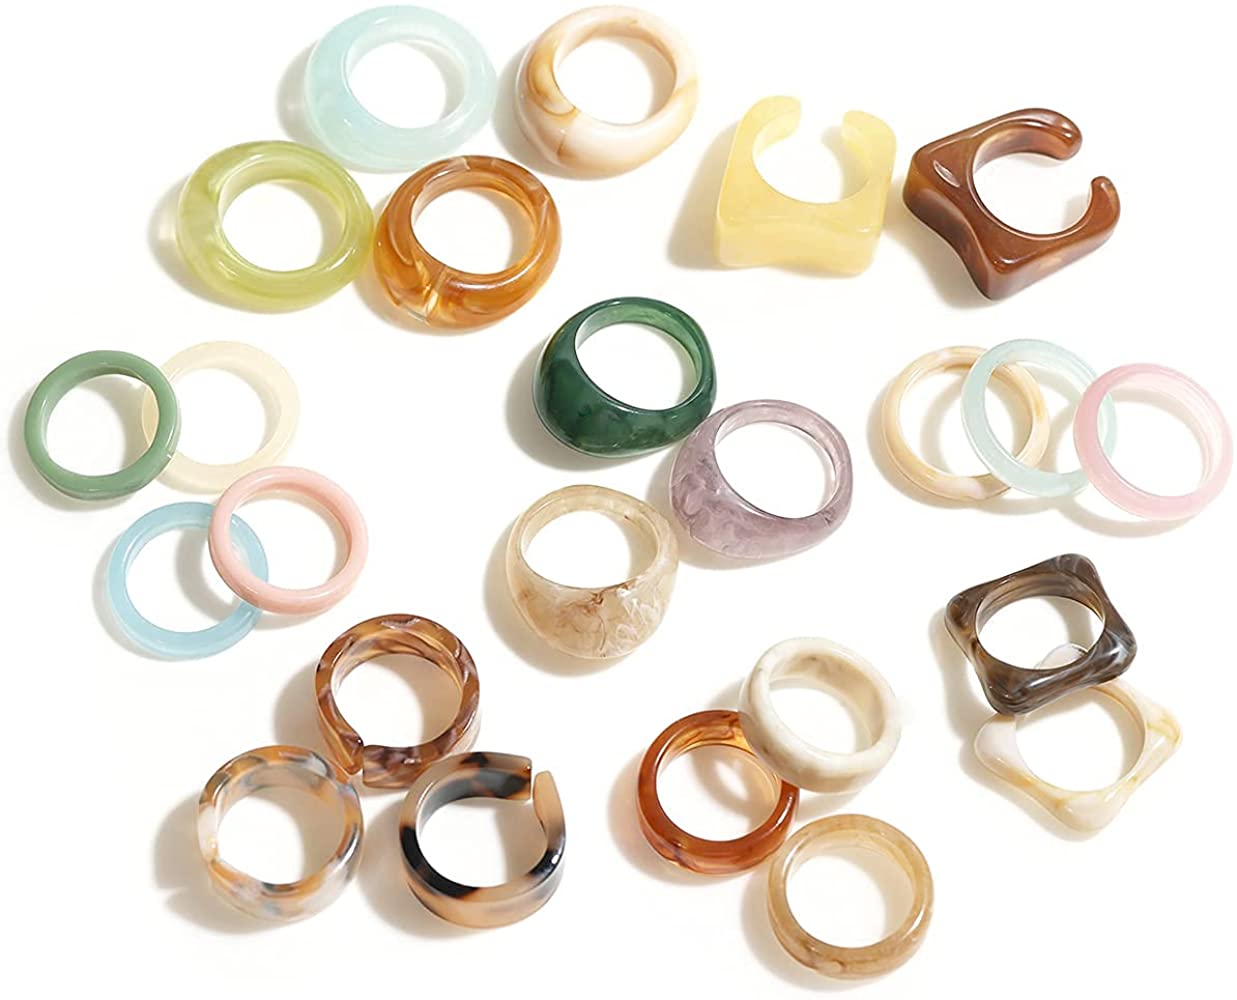 Resin Rings - Various Styles